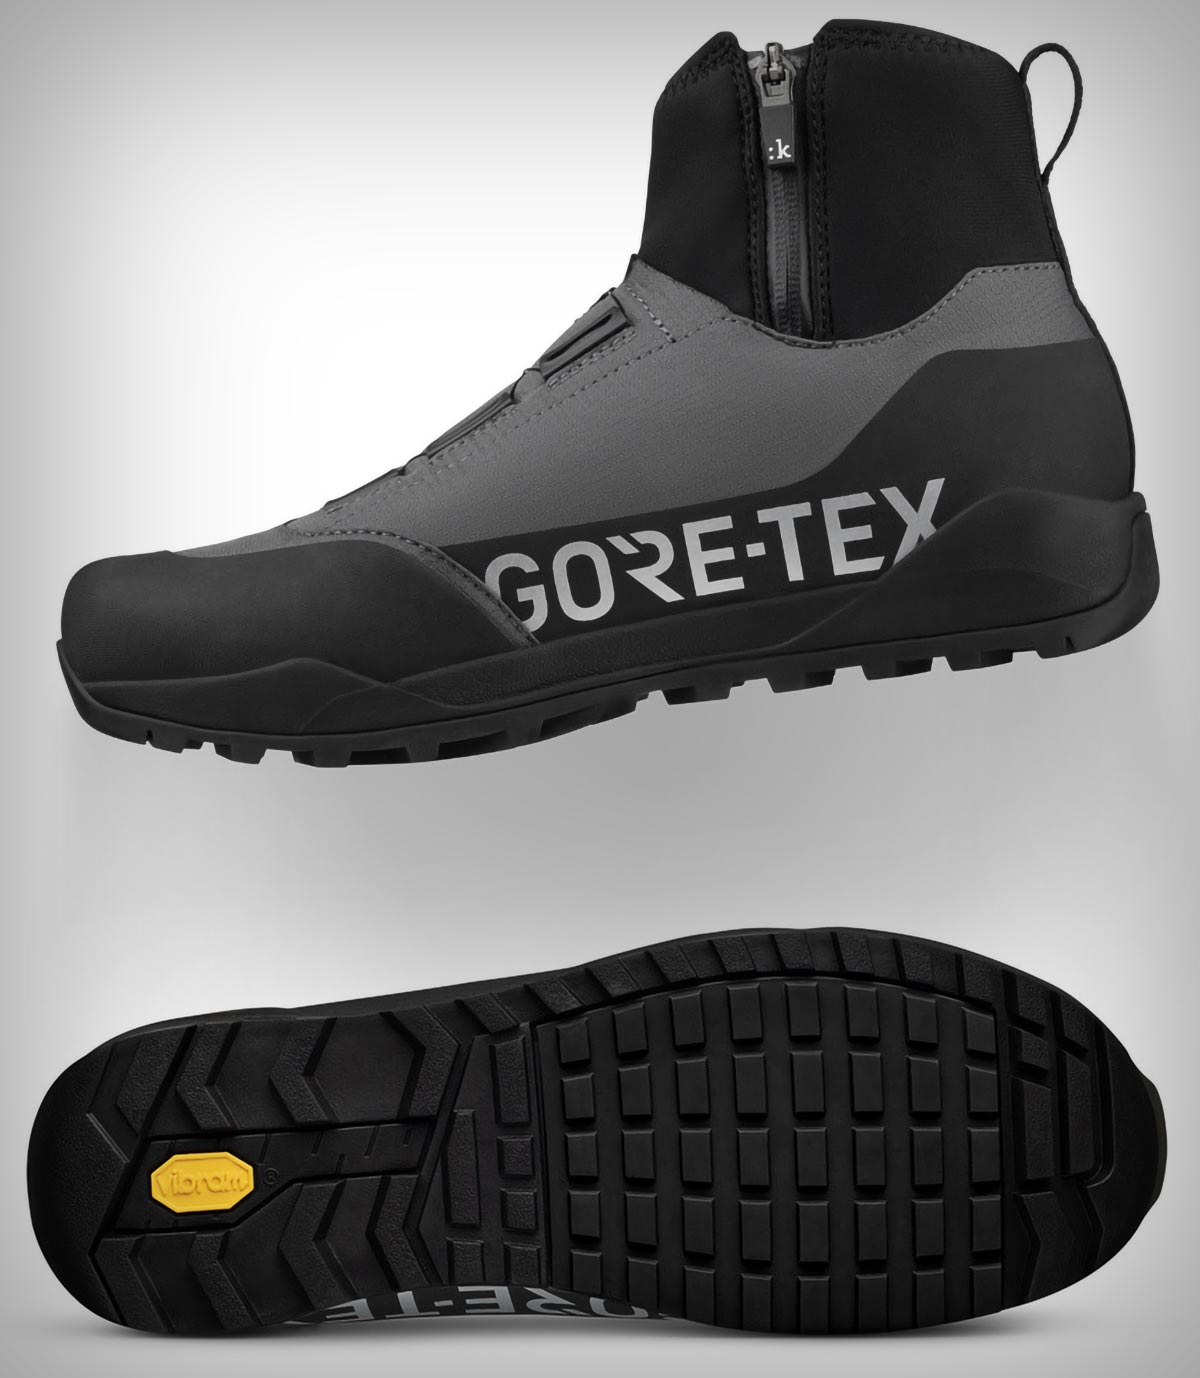 Fizik presenta las Nanuq GTX, unas zapatillas todoterreno para seguir pedaleando durante todo el invierno